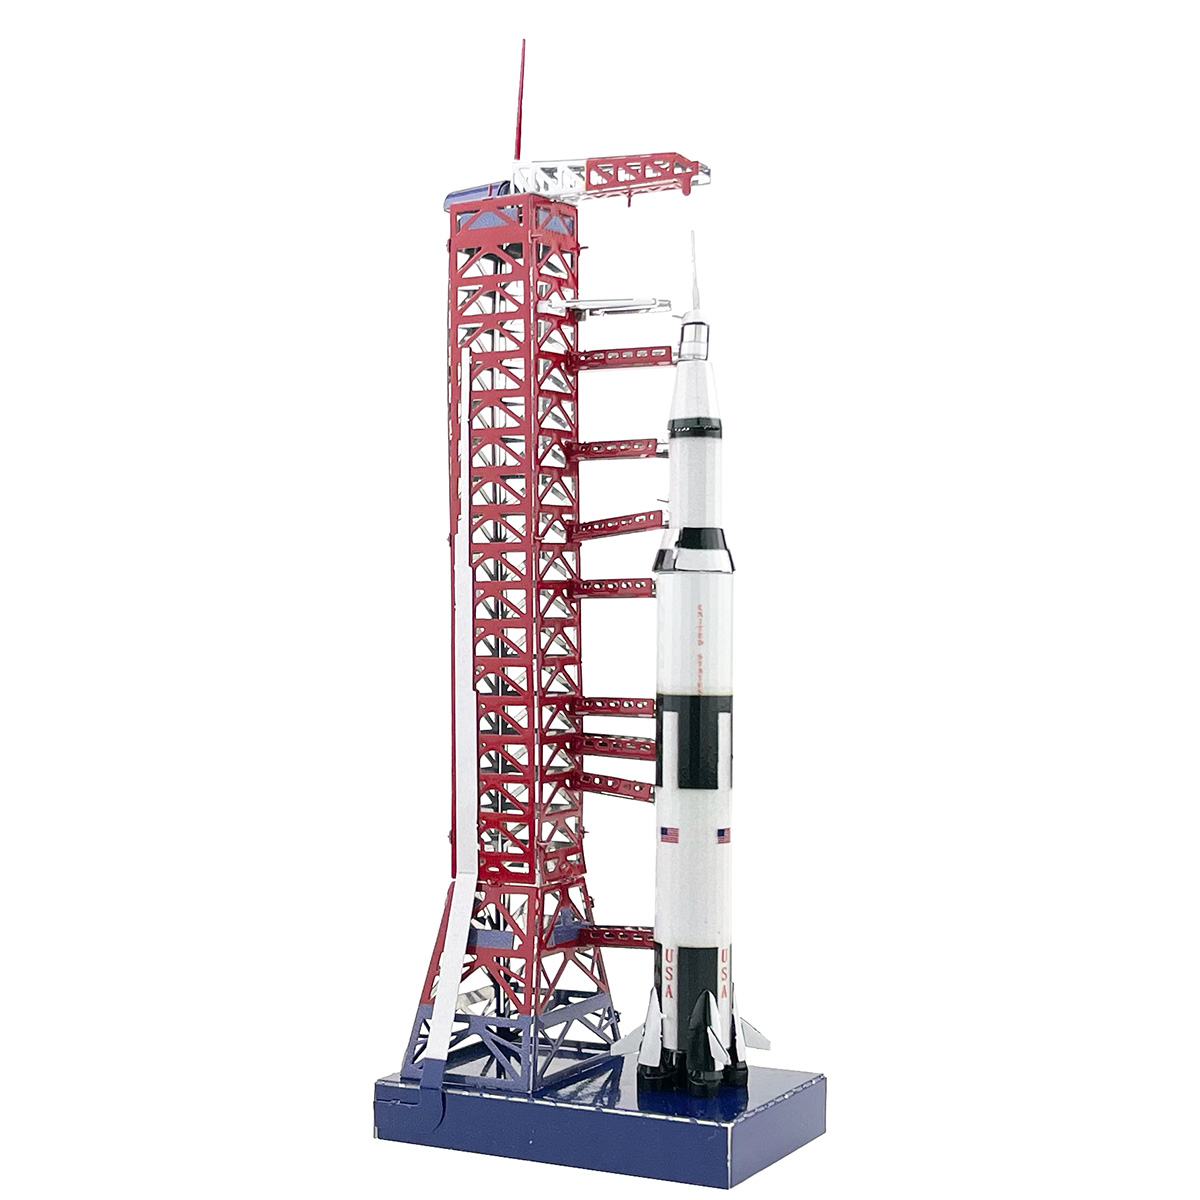 狂模 登月土星五号火箭发射台 金属拼图 DIY拼装模型 - 图1